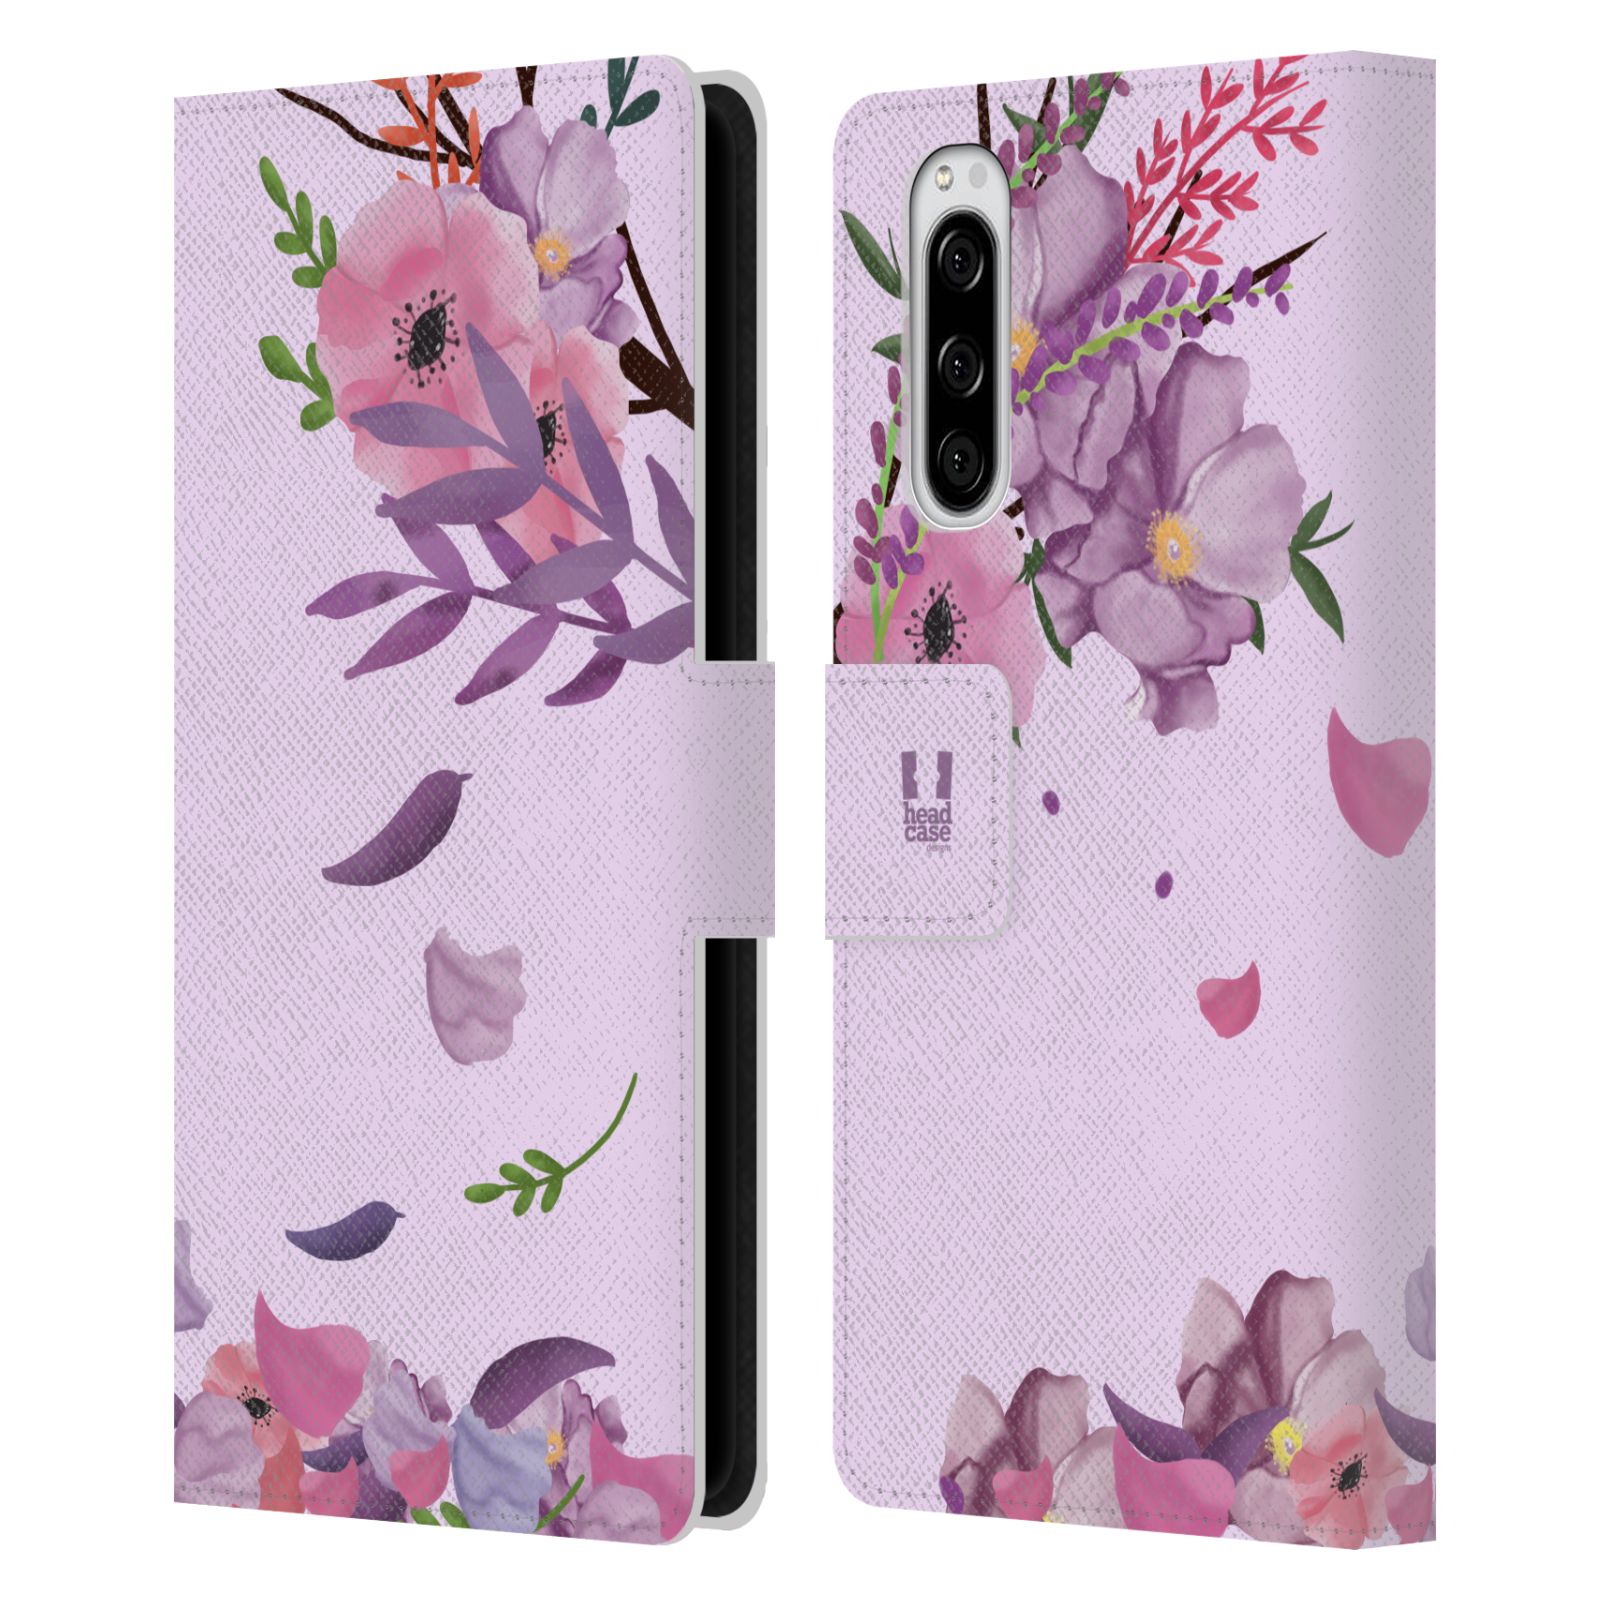 Pouzdro na mobil Sony Xperia 5  - HEAD CASE - Rozkvetlé růže a listy růžová